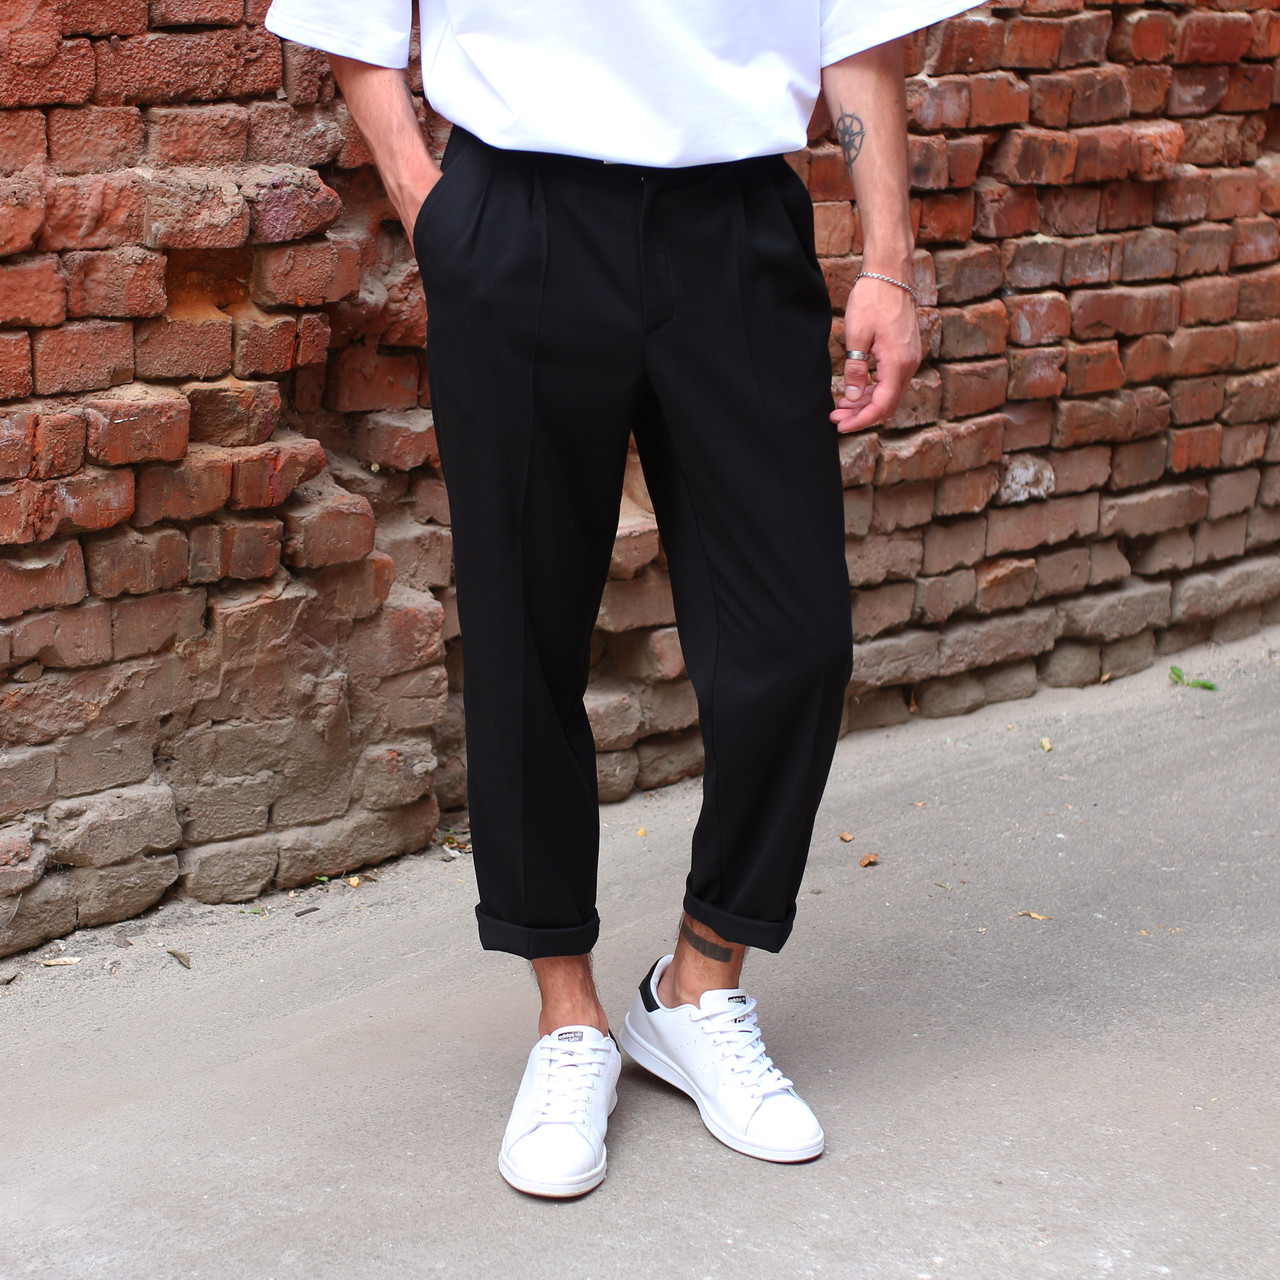 Чоловічі штани чоловічі бренд ТУР модель Хадо (Hado) TURWEAR - Фото 1